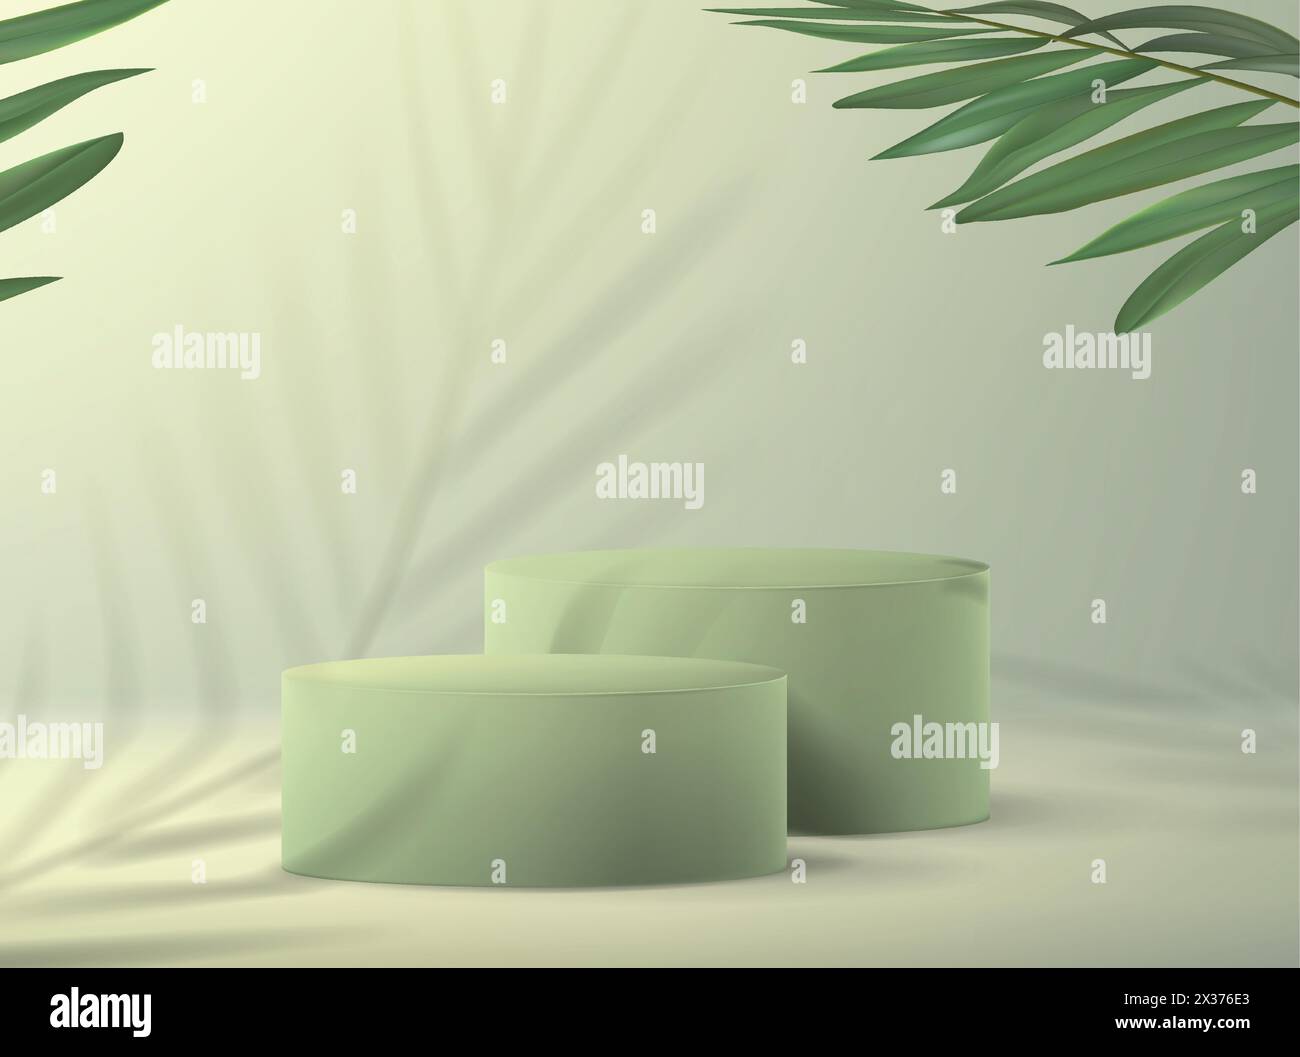 Fond avec un piédestal vide pour la démonstration du produit dans un style minimaliste dans les tons de vert avec des branches de palmier. Bannière réaliste pour advertis Illustration de Vecteur